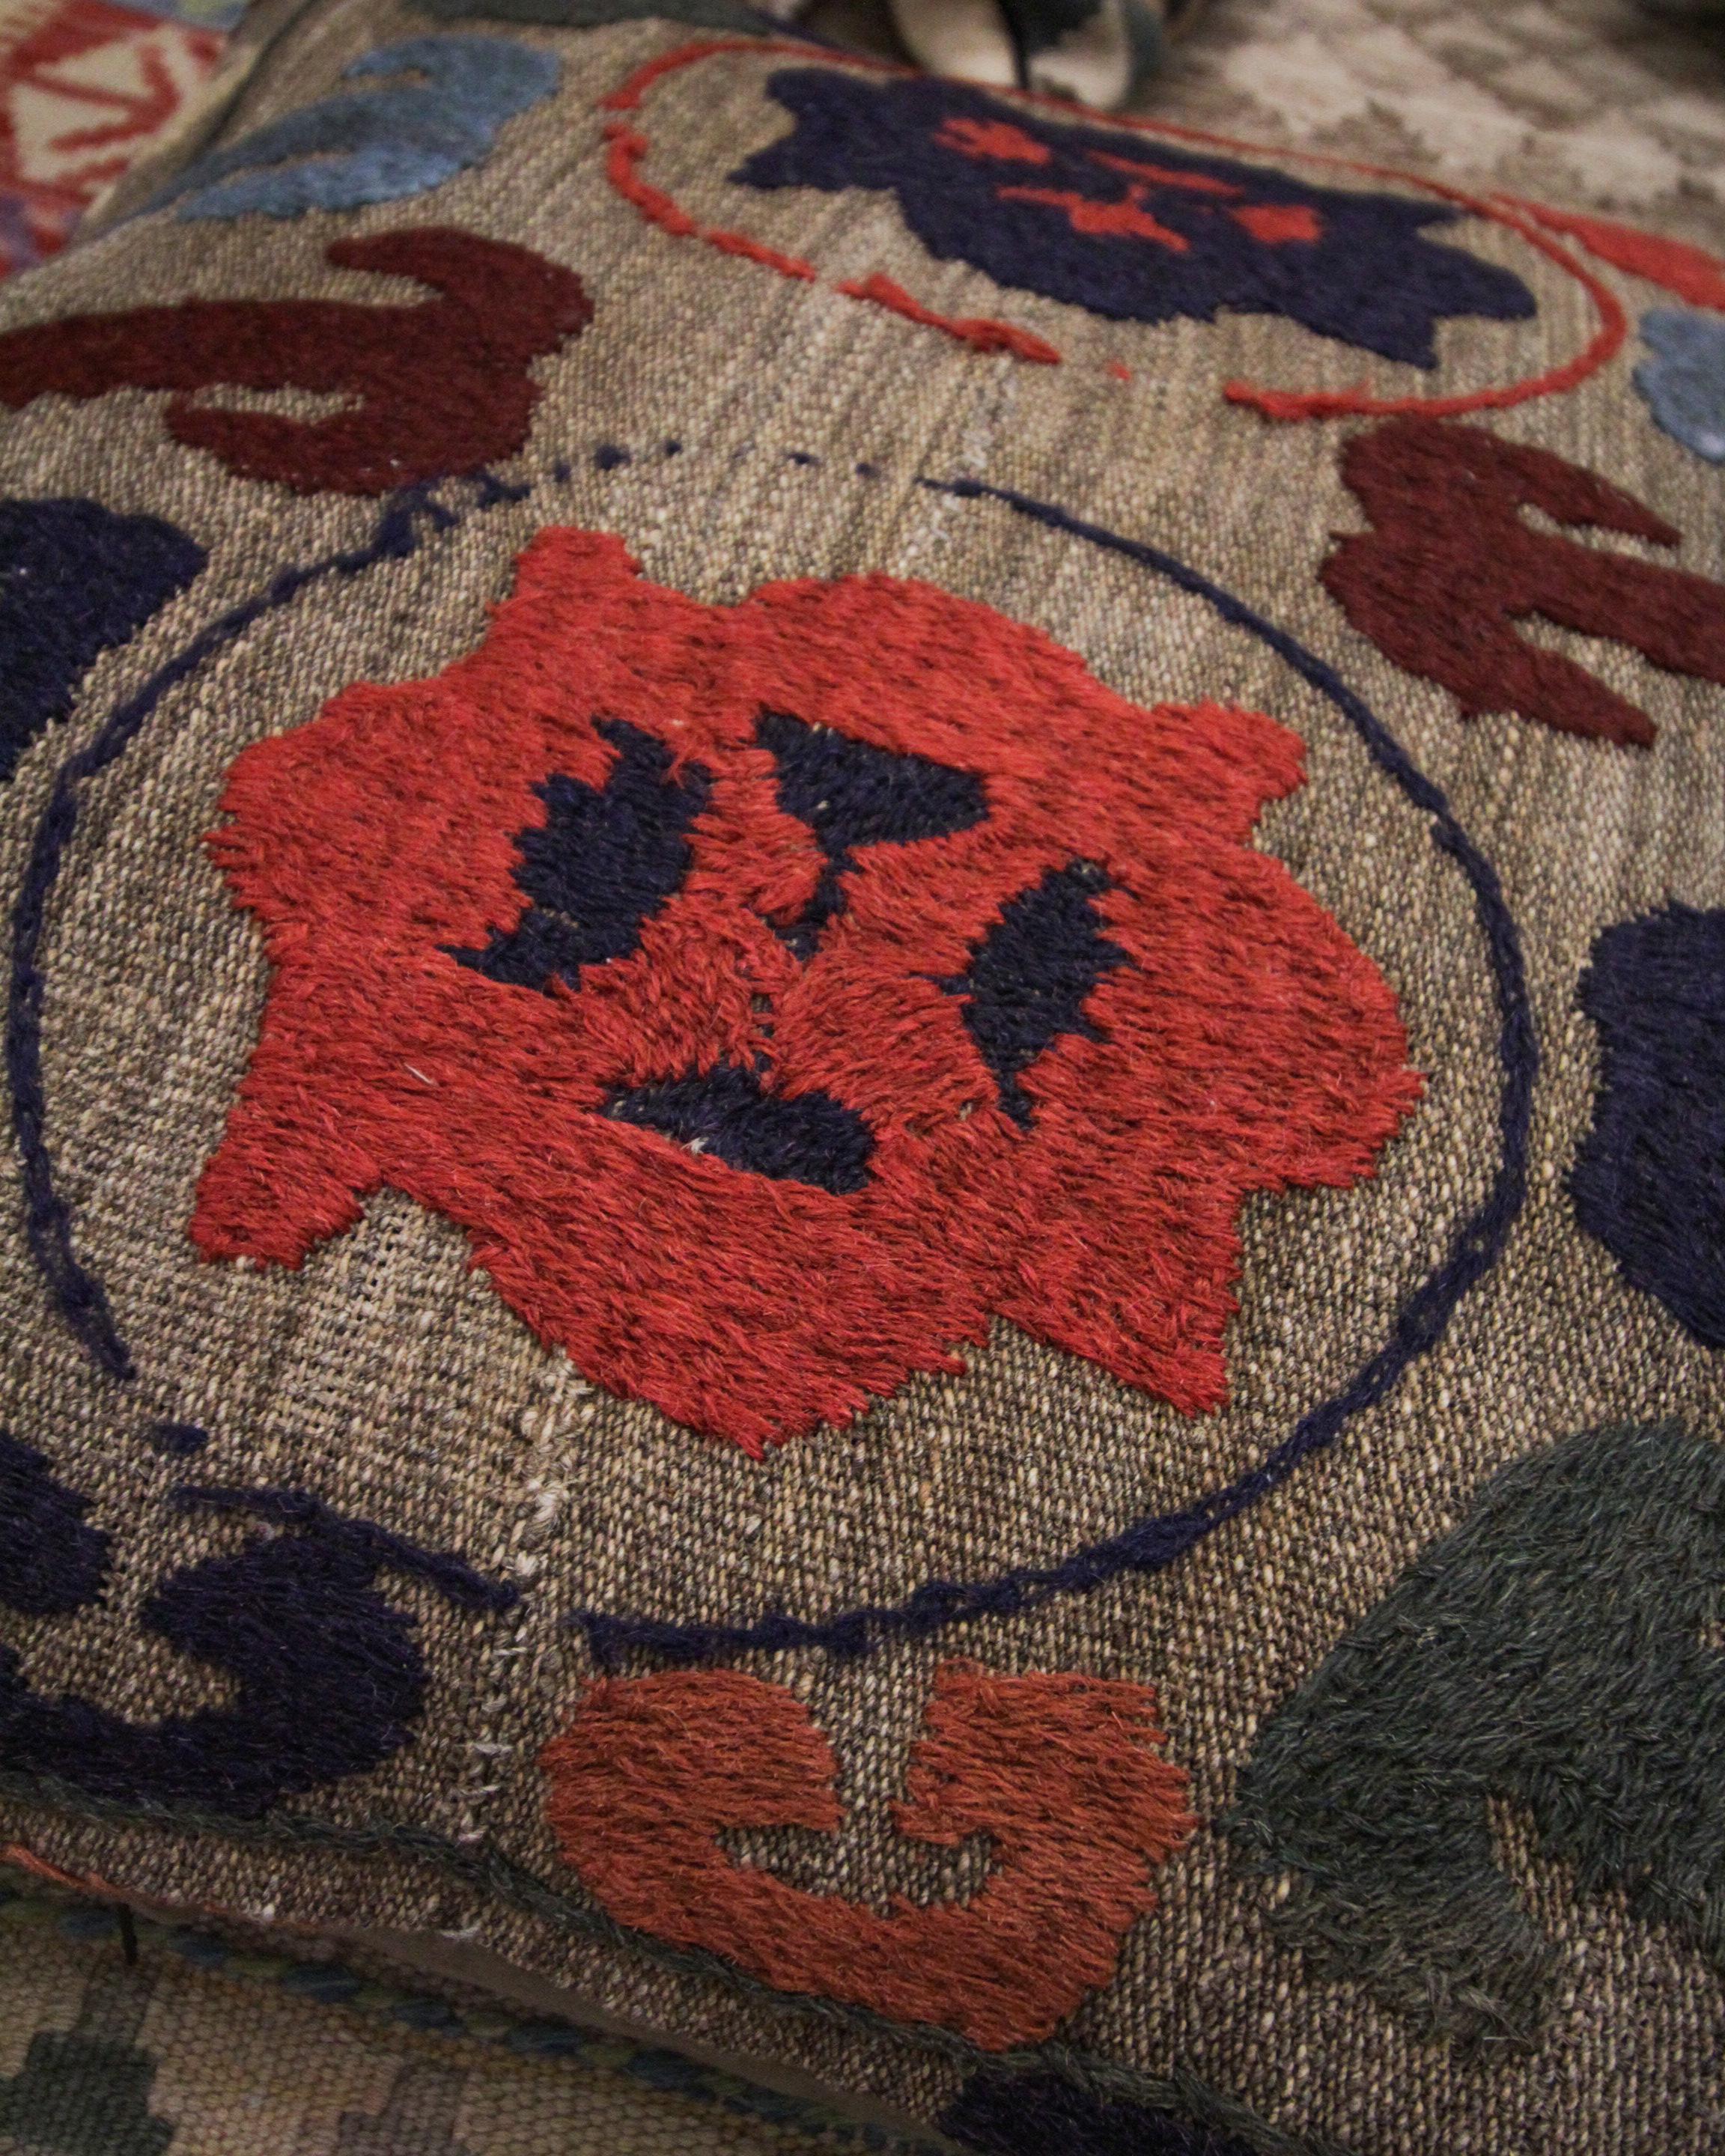 Dieser einzigartige Tribal-Kissenbezug ist ein größeres Stück, das sich für ein Bett oder ein Sofa eignet. Gewebt mit einem einzigartigen, sich wiederholenden Stammesmotivmuster mit Akzenten in Braun, Rot, Beige, Orange und Grün auf beige-braunem